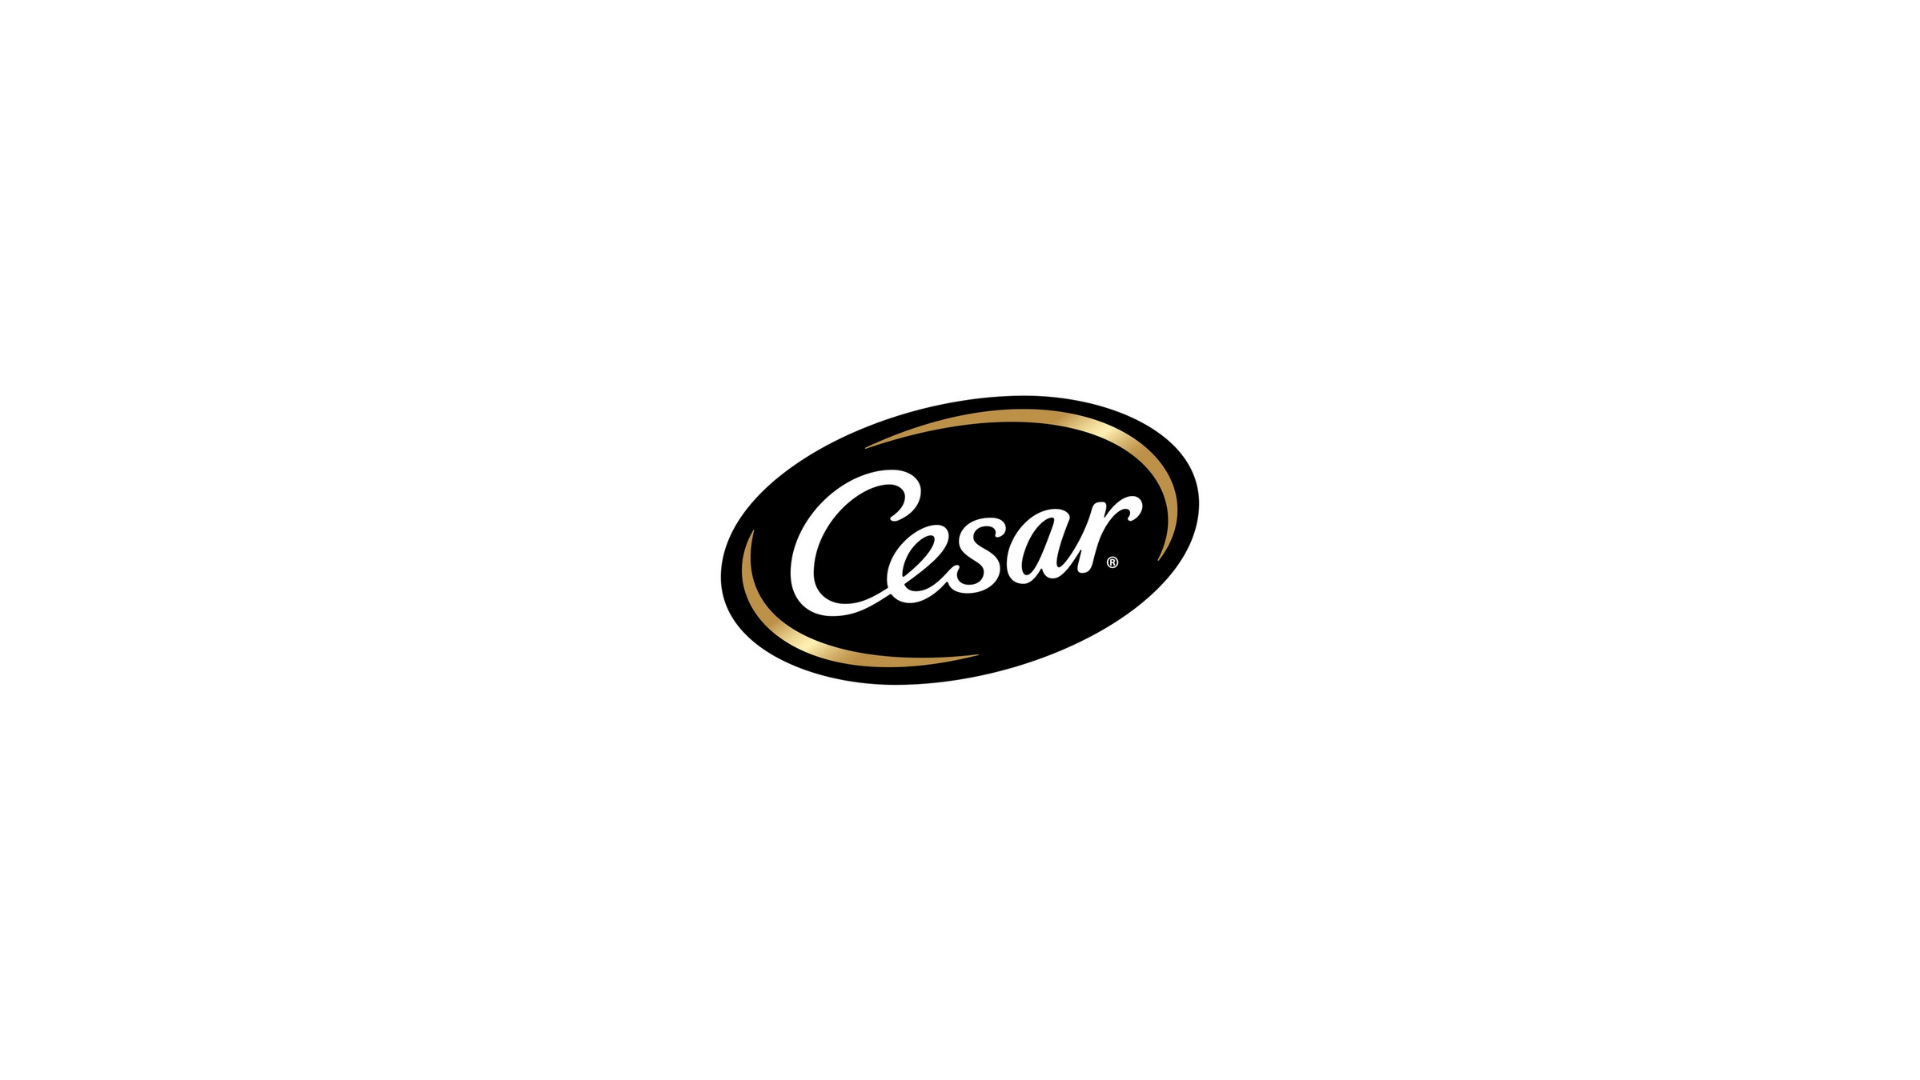 Cesar logo.png